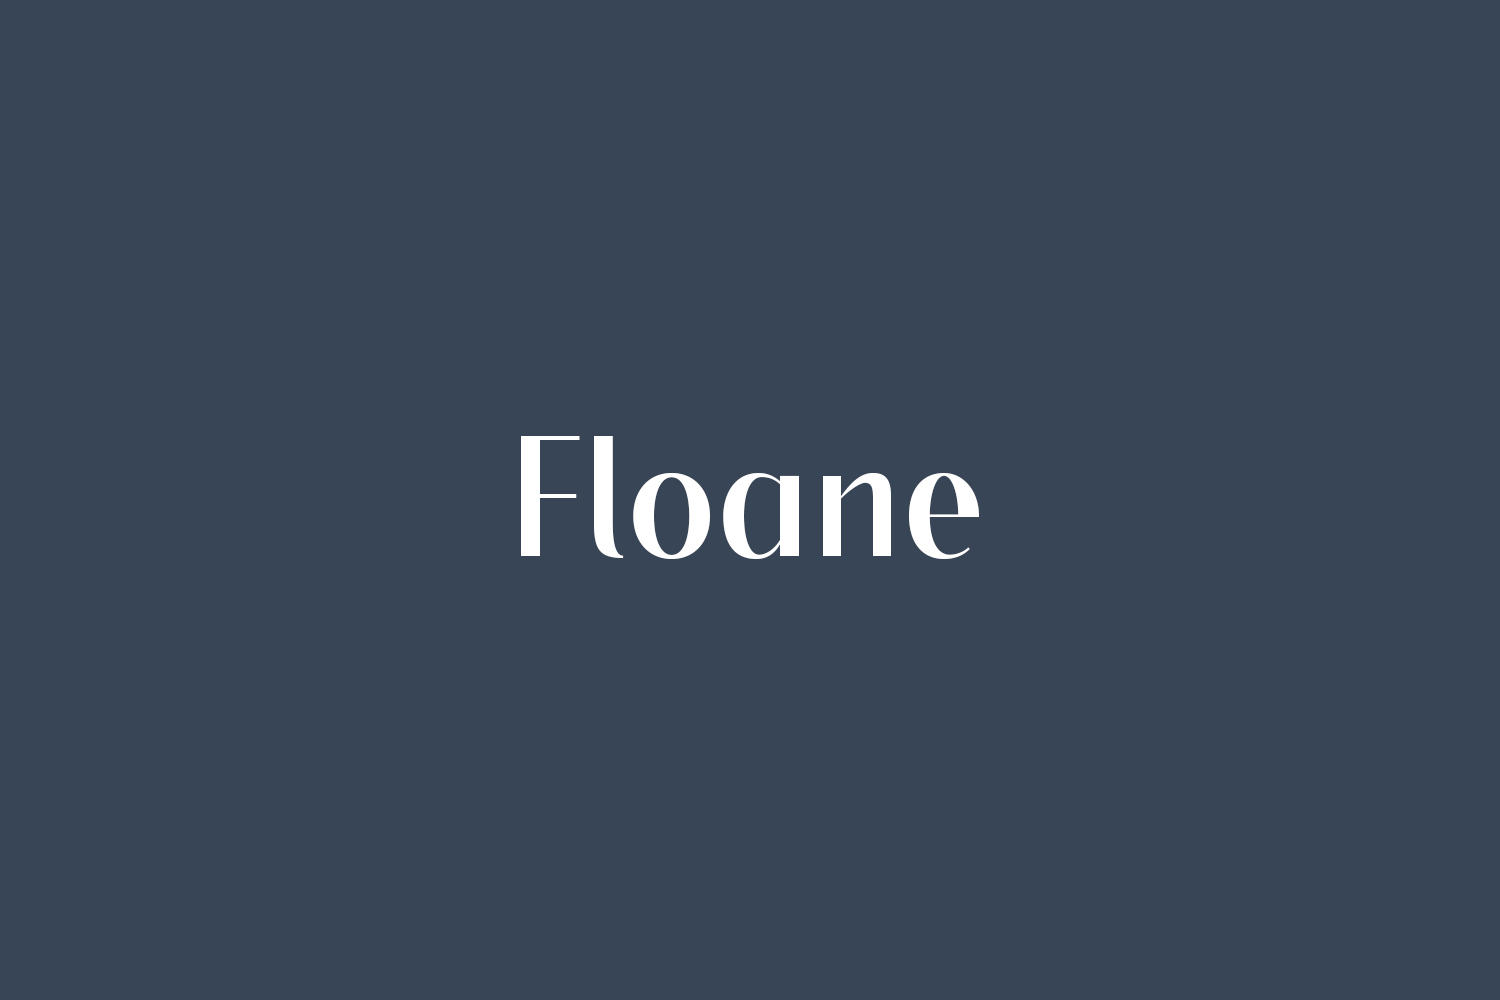 Floane Free Font